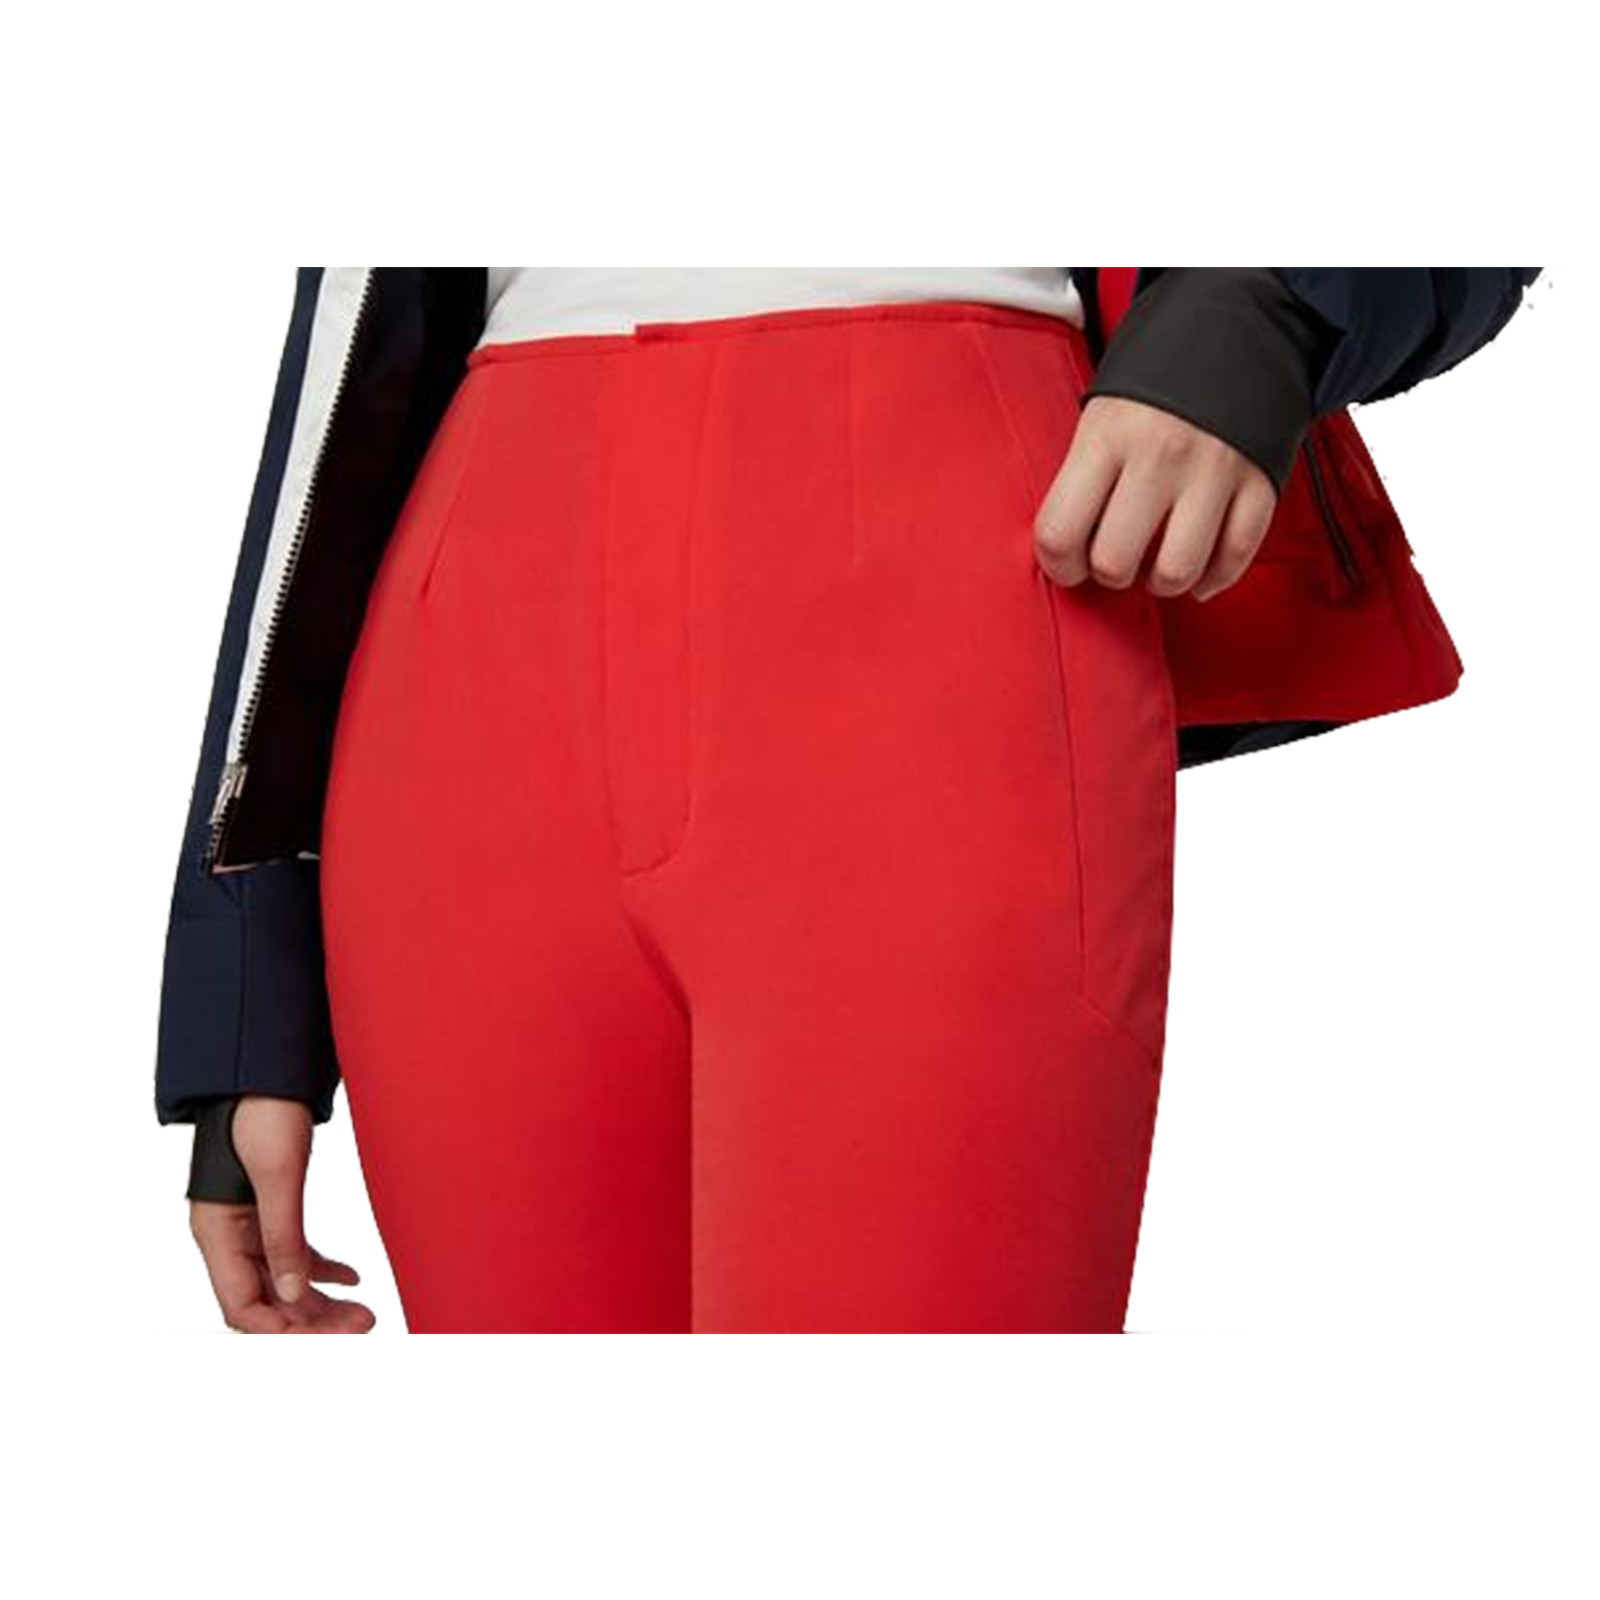 Fera Heaven Stretch Women's Insulated Pant, Alpine / Apparel